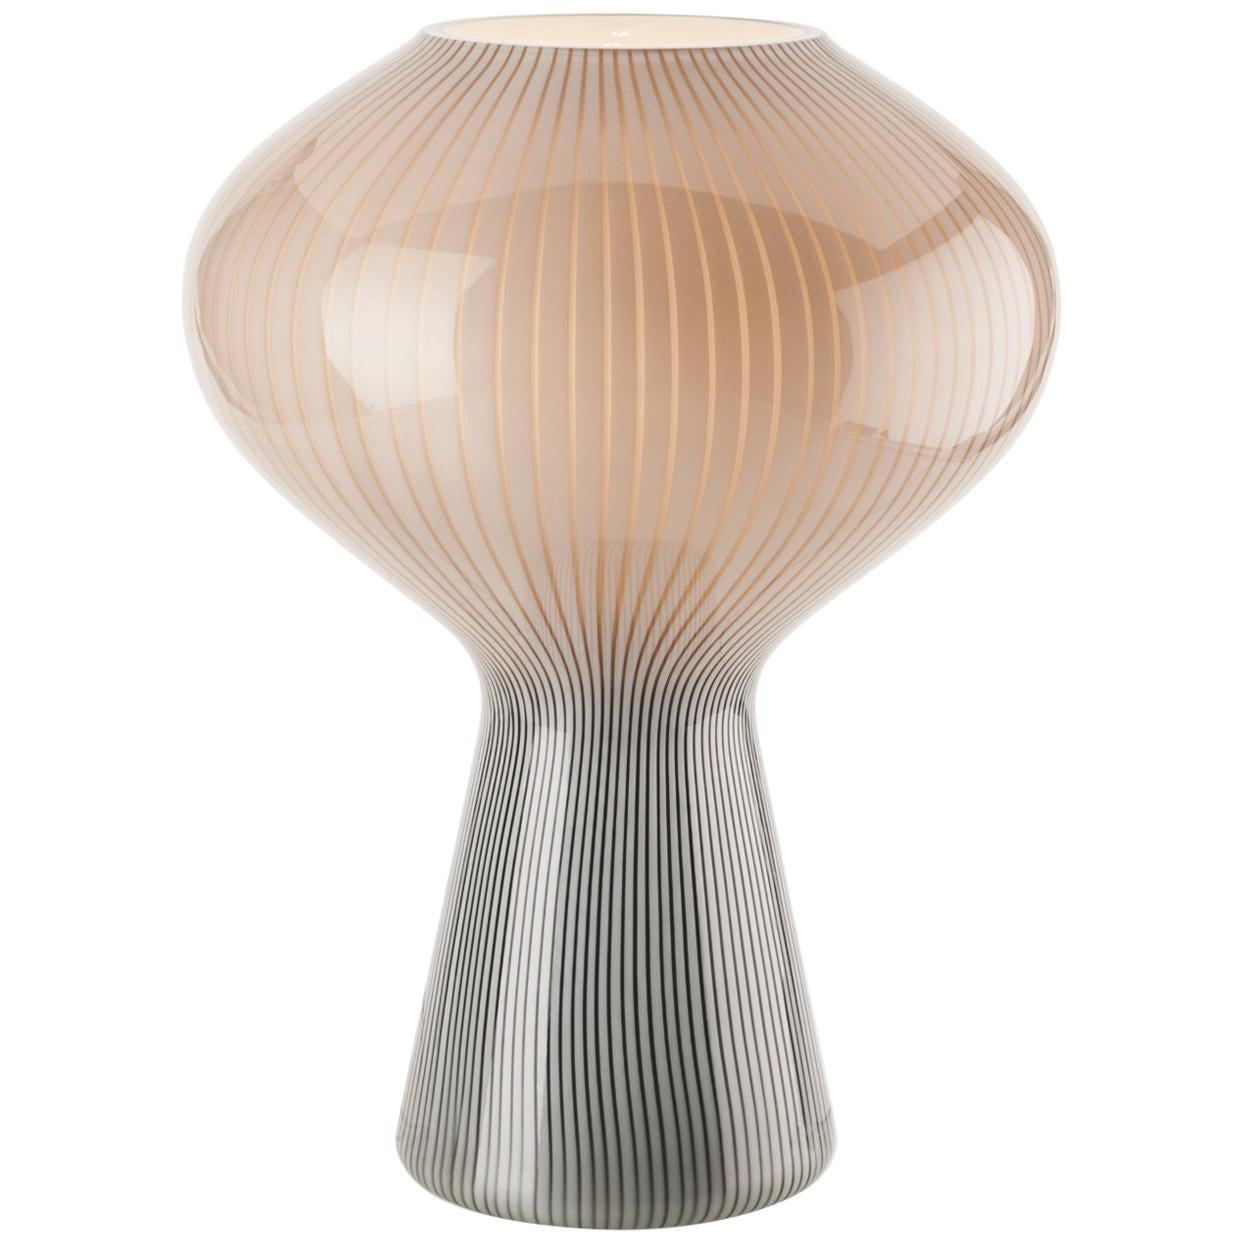 Venini Fungo Table Lamp in Gray and White by Massimo Vignelli